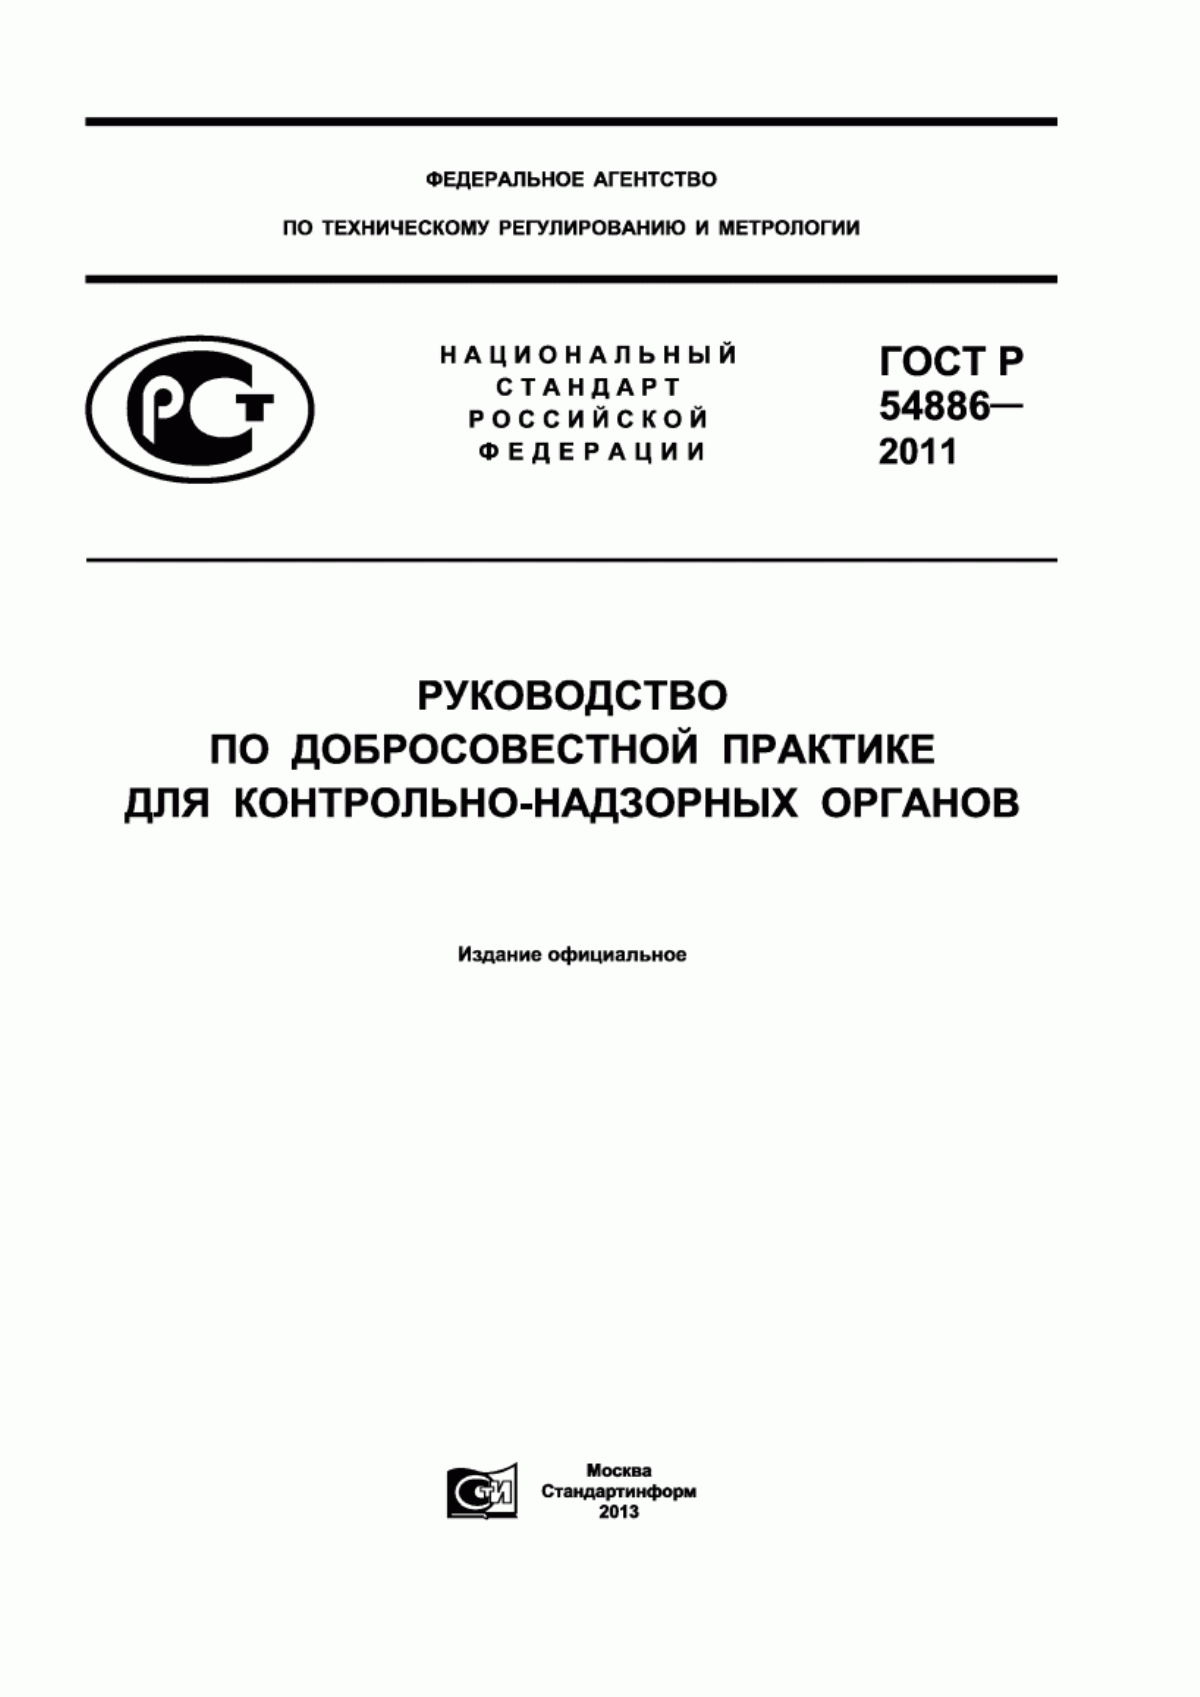 ГОСТ Р 54886-2011 Руководство по добросовестной практике для контрольно-надзорных органов